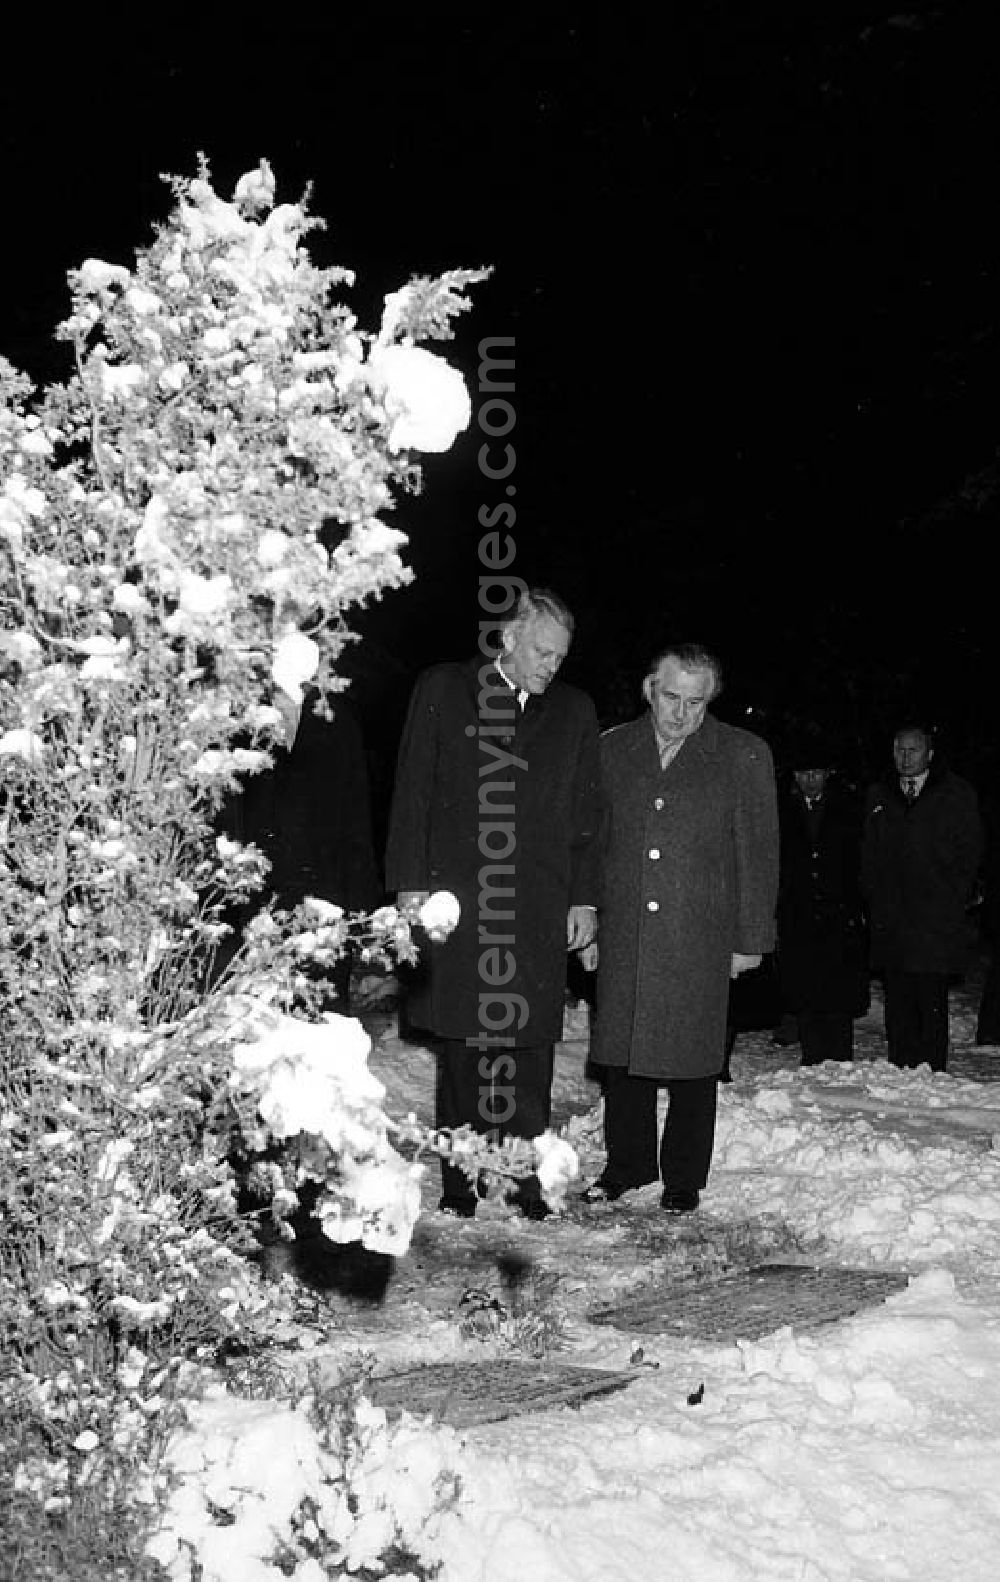 GDR photo archive: Halbe / Brandenburg - 12.12.1981 Kranzniederlegung in Halbe (Brandenburg) durch Erich Honecker und Helmut Schmidt Umschlagnr.: 1